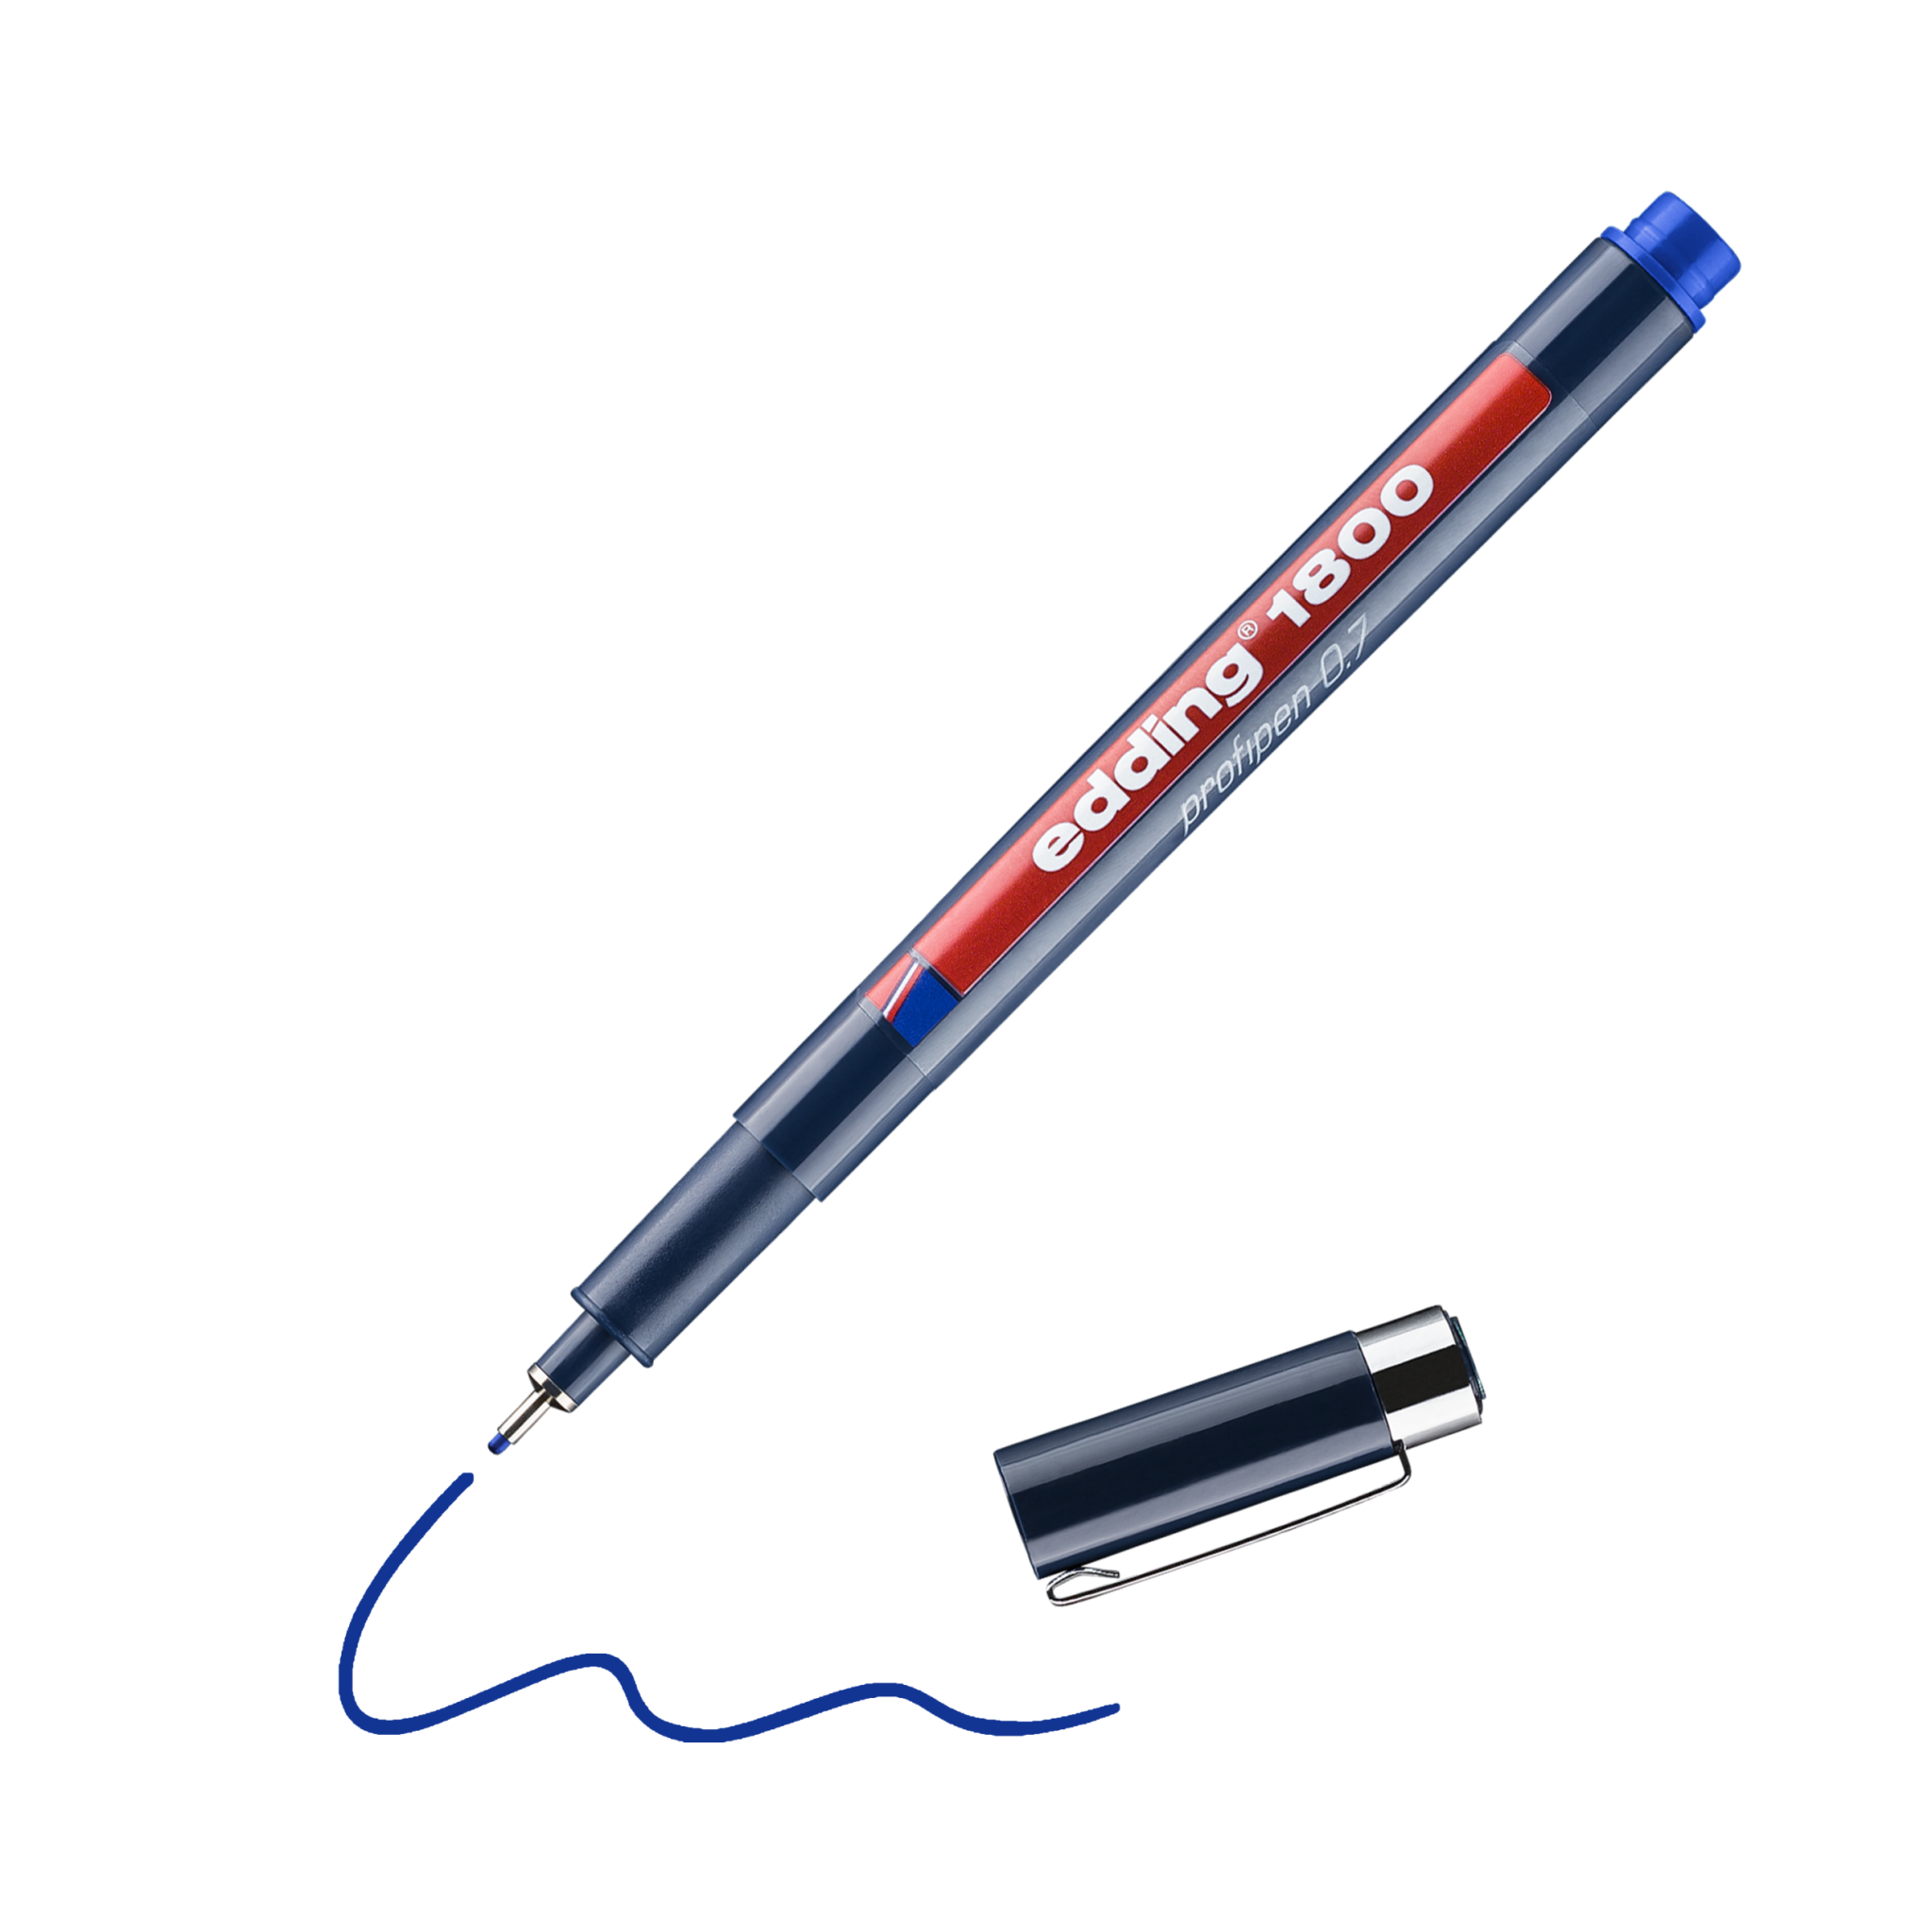 Ein blauer edding 1800 Präzisionsfeinschreiber-Präzisionsstift mit abgenommener Kappe, der eine verschnörkelte Linie auf schwarzem Hintergrund zeichnet.